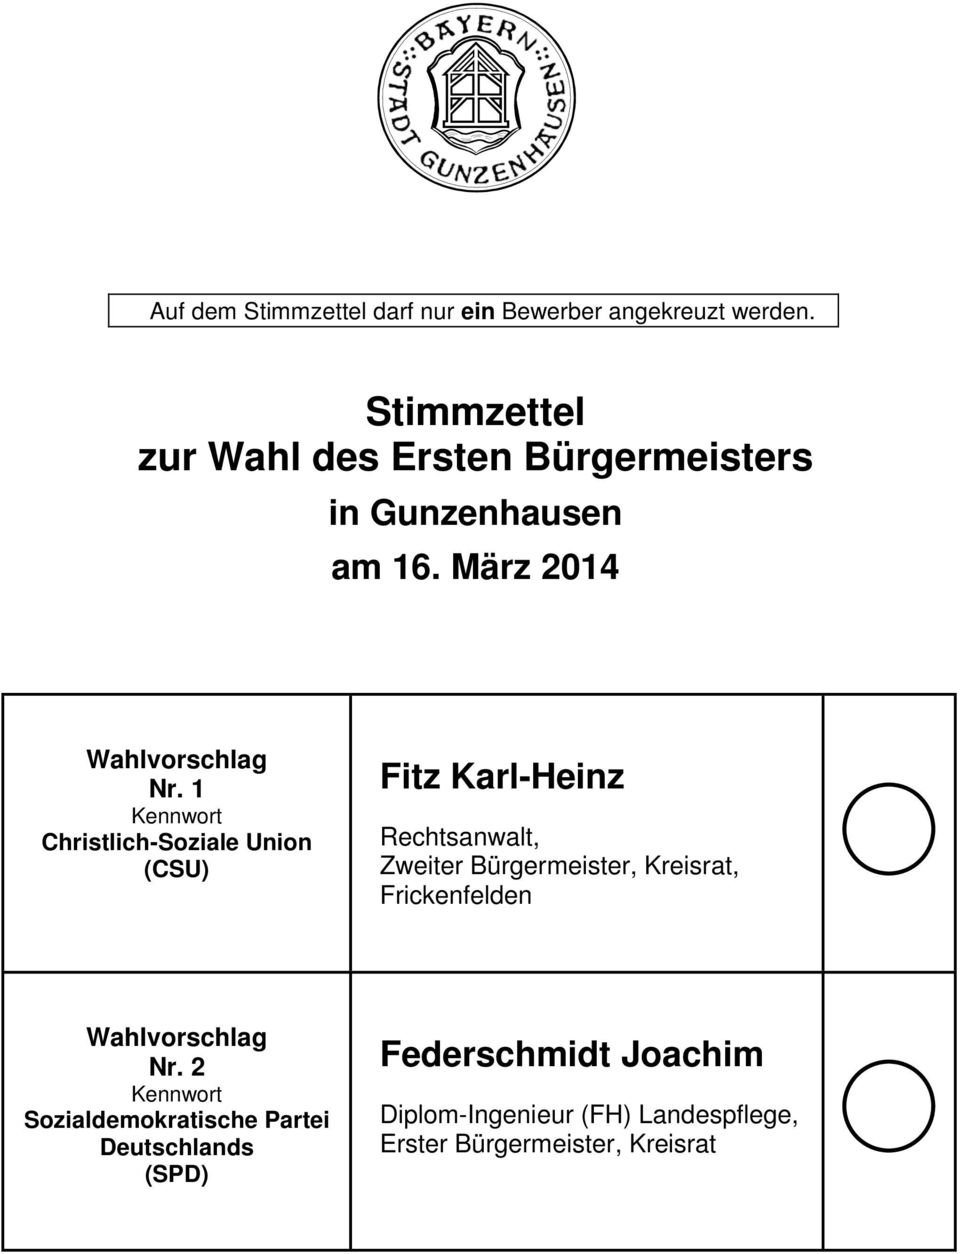 1 Christlich-Soziale Union (CSU) Fitz Karl-Heinz Rechtsanwalt, Zweiter Bürgermeister, Kreisrat,